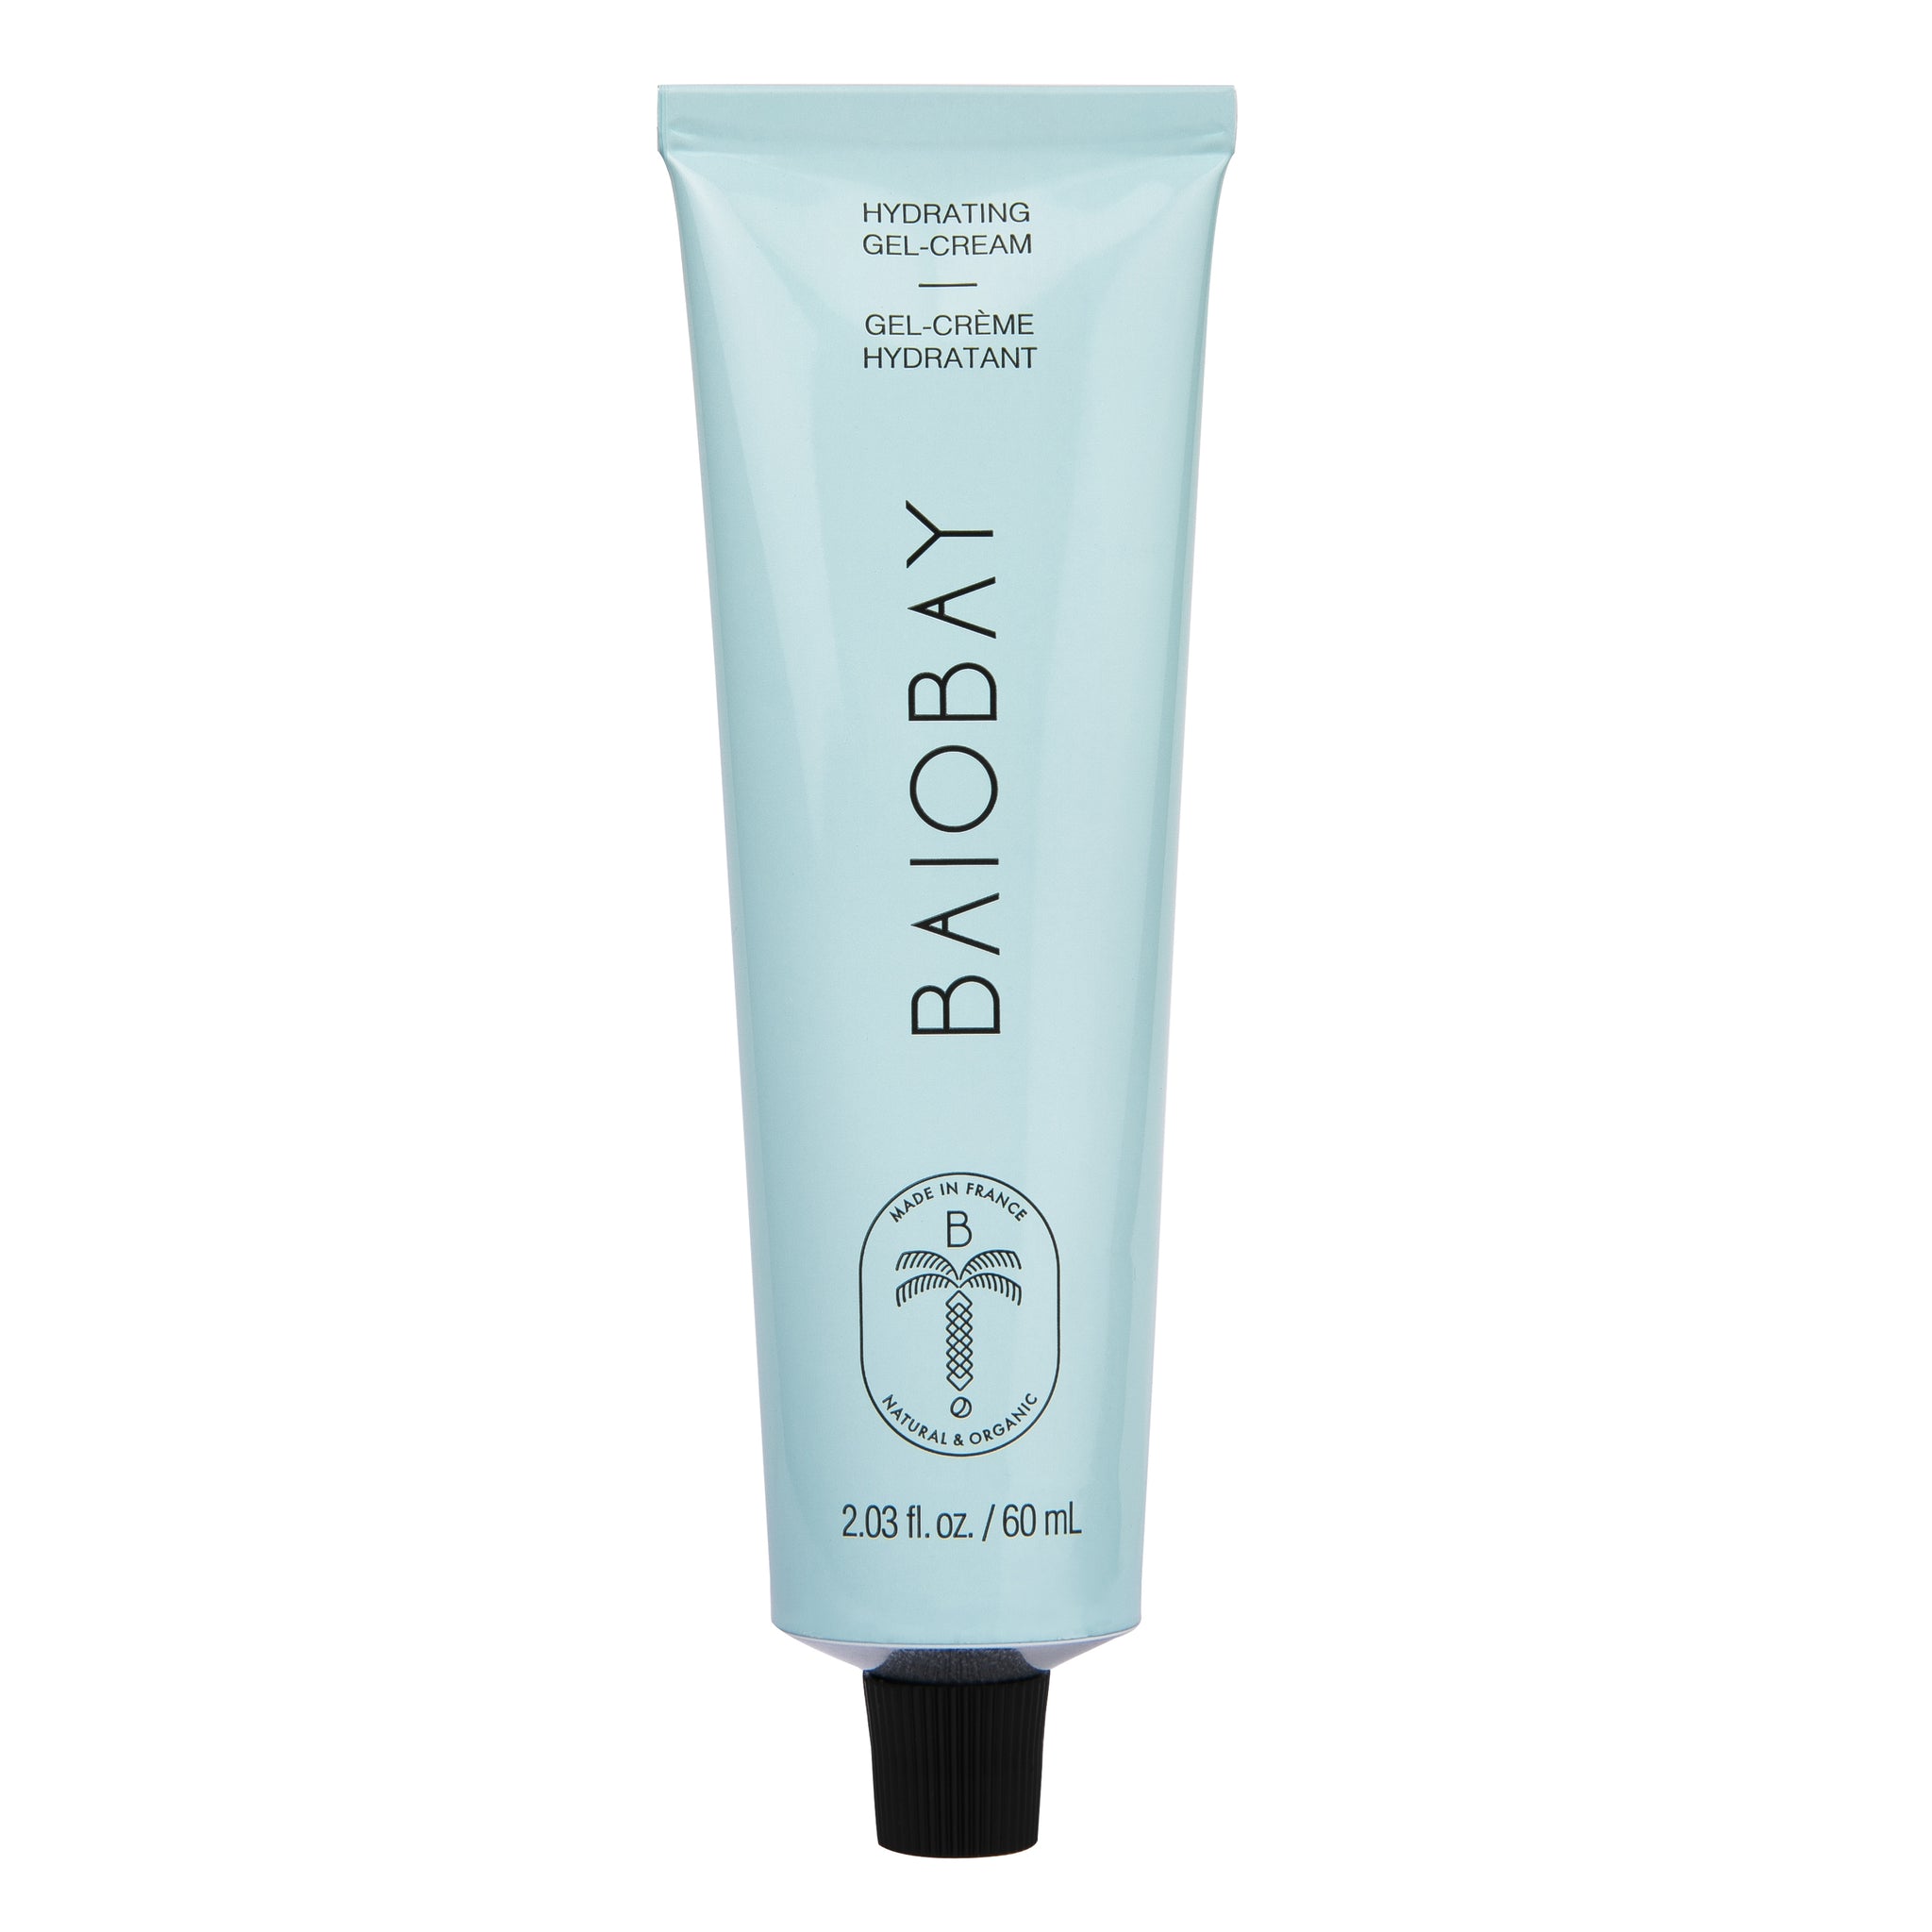 BAIOBAY • Gel-crème hydratant visage • 60 ml